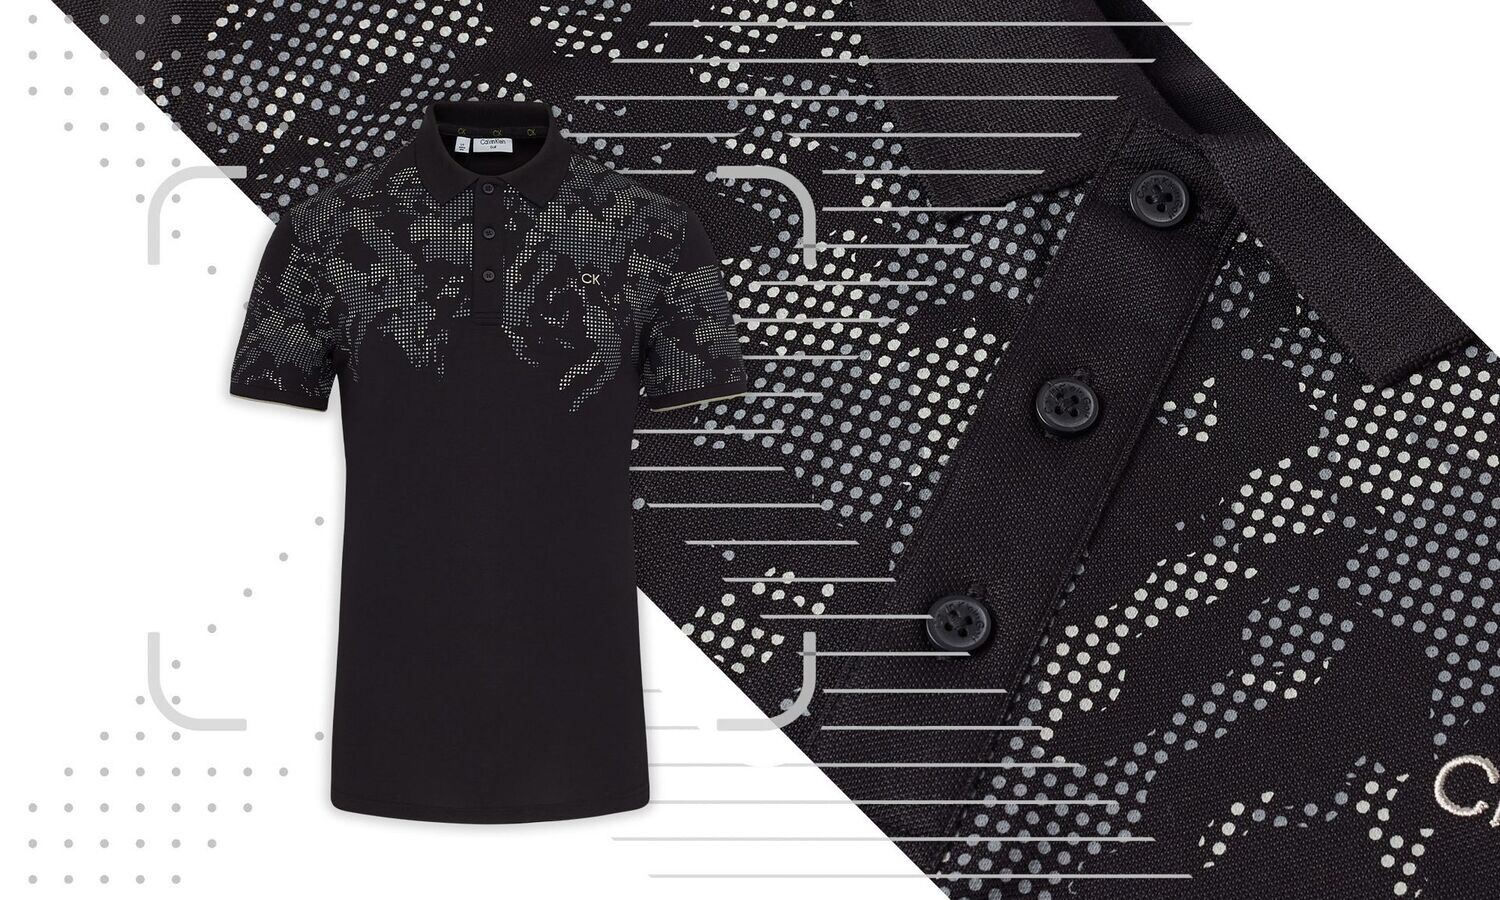 Calvin Klein Nashua Printed Golf Polo Shirt - Black